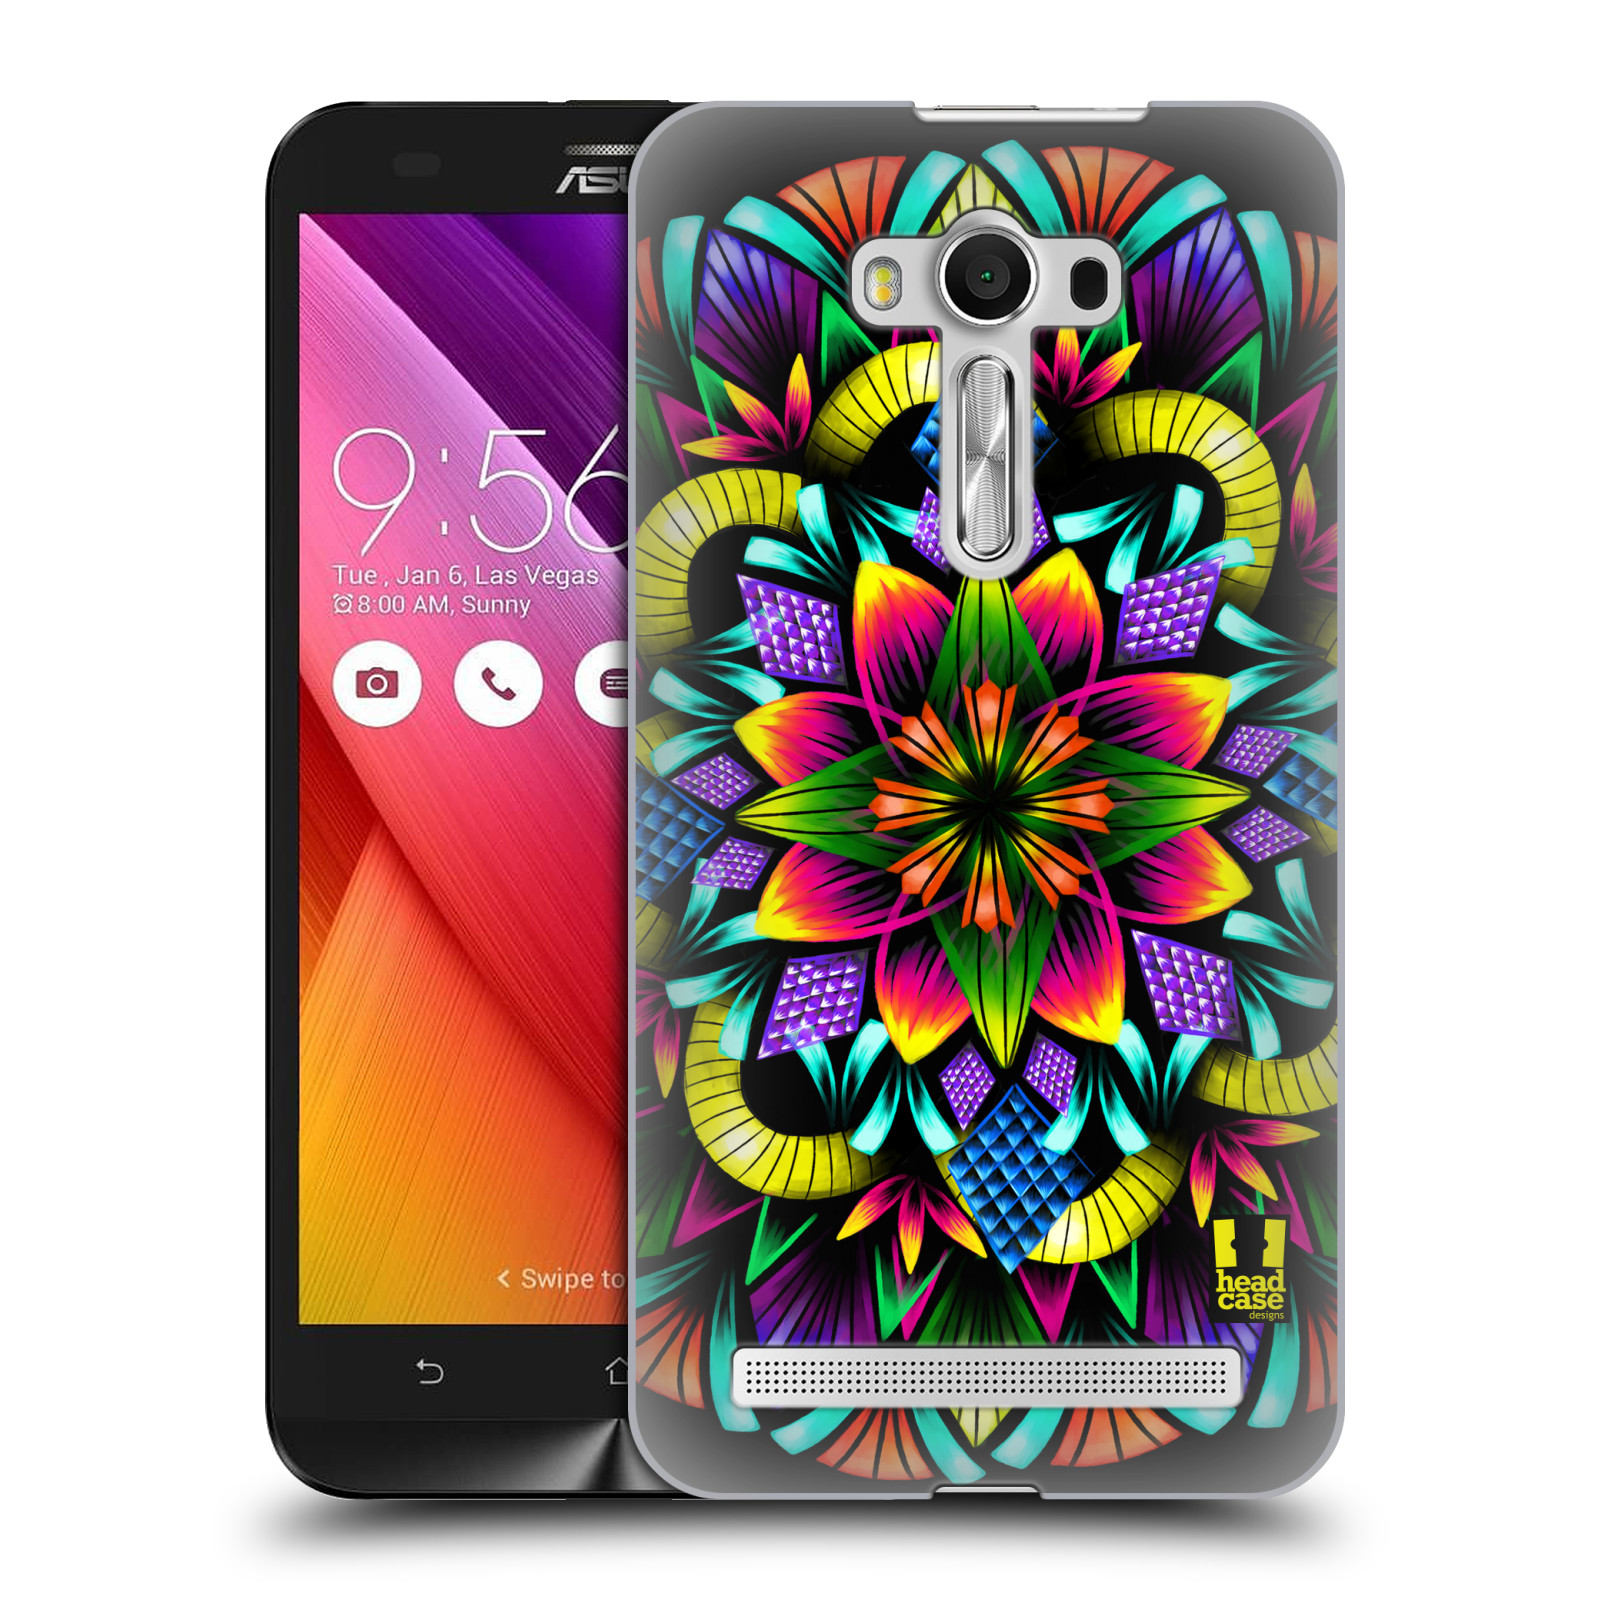 HEAD CASE plastový obal na mobil Asus Zenfone 2 LASER (5,5 displej ZE550KL) vzor Indie Mandala kaleidoskop barevný vzor KVĚTINA